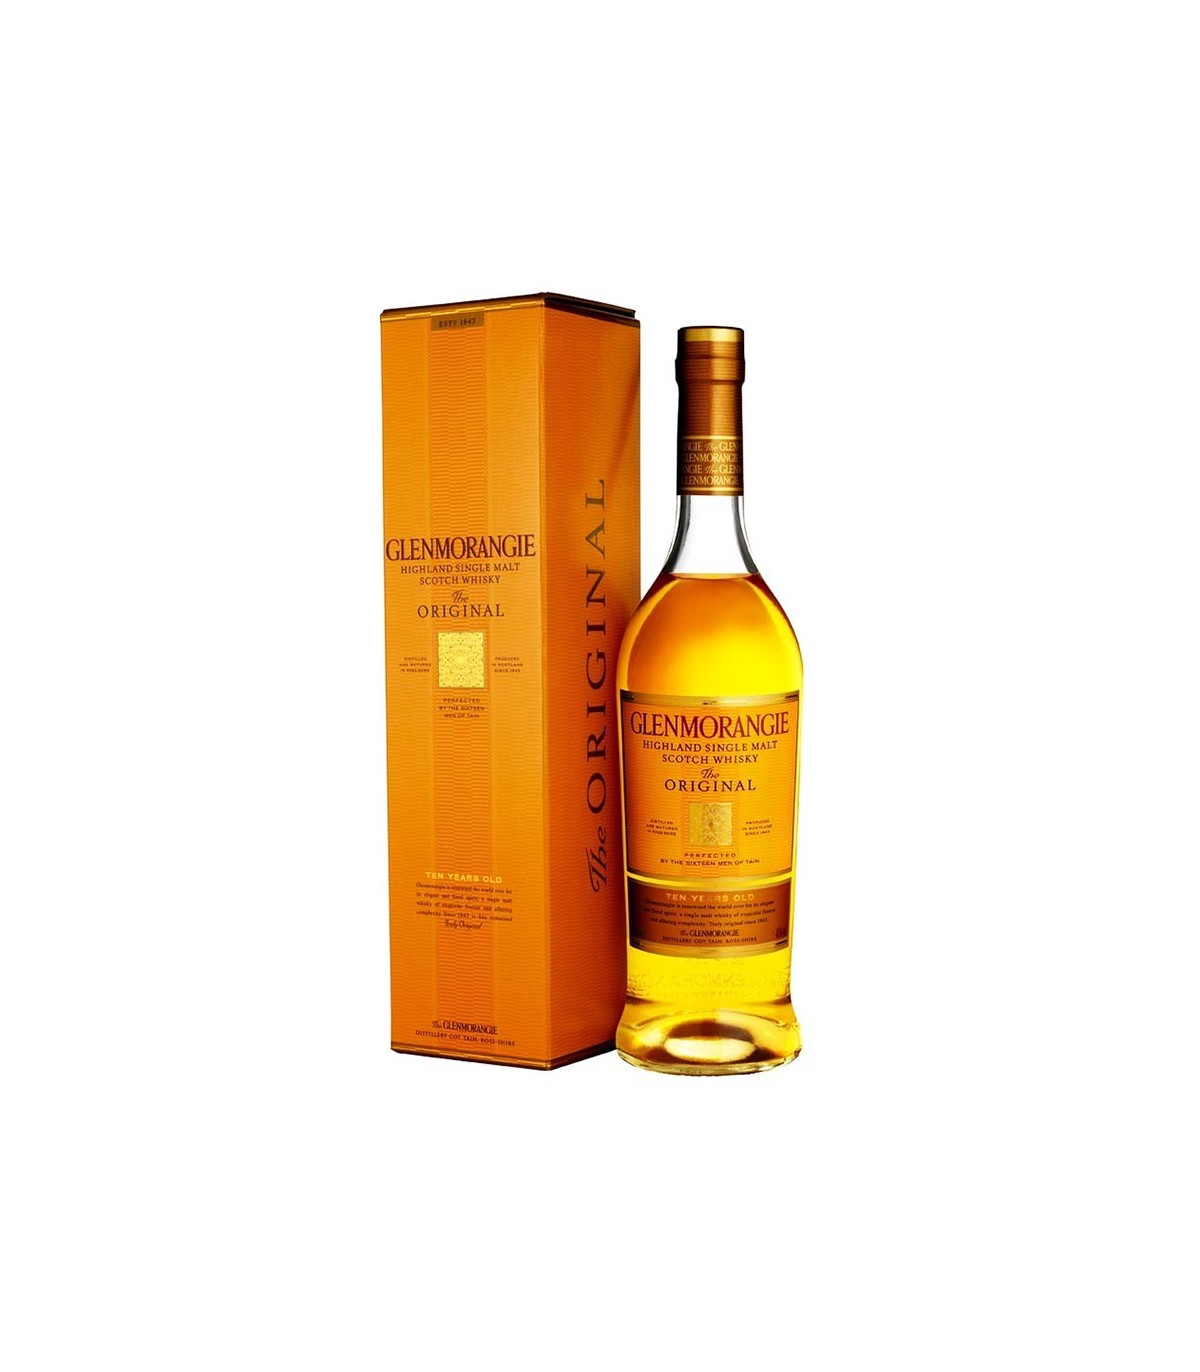 Whisky Glenmorangie 10 ans d'age - Achat / Vente d'alcool, whisky et  cocktail en ligne